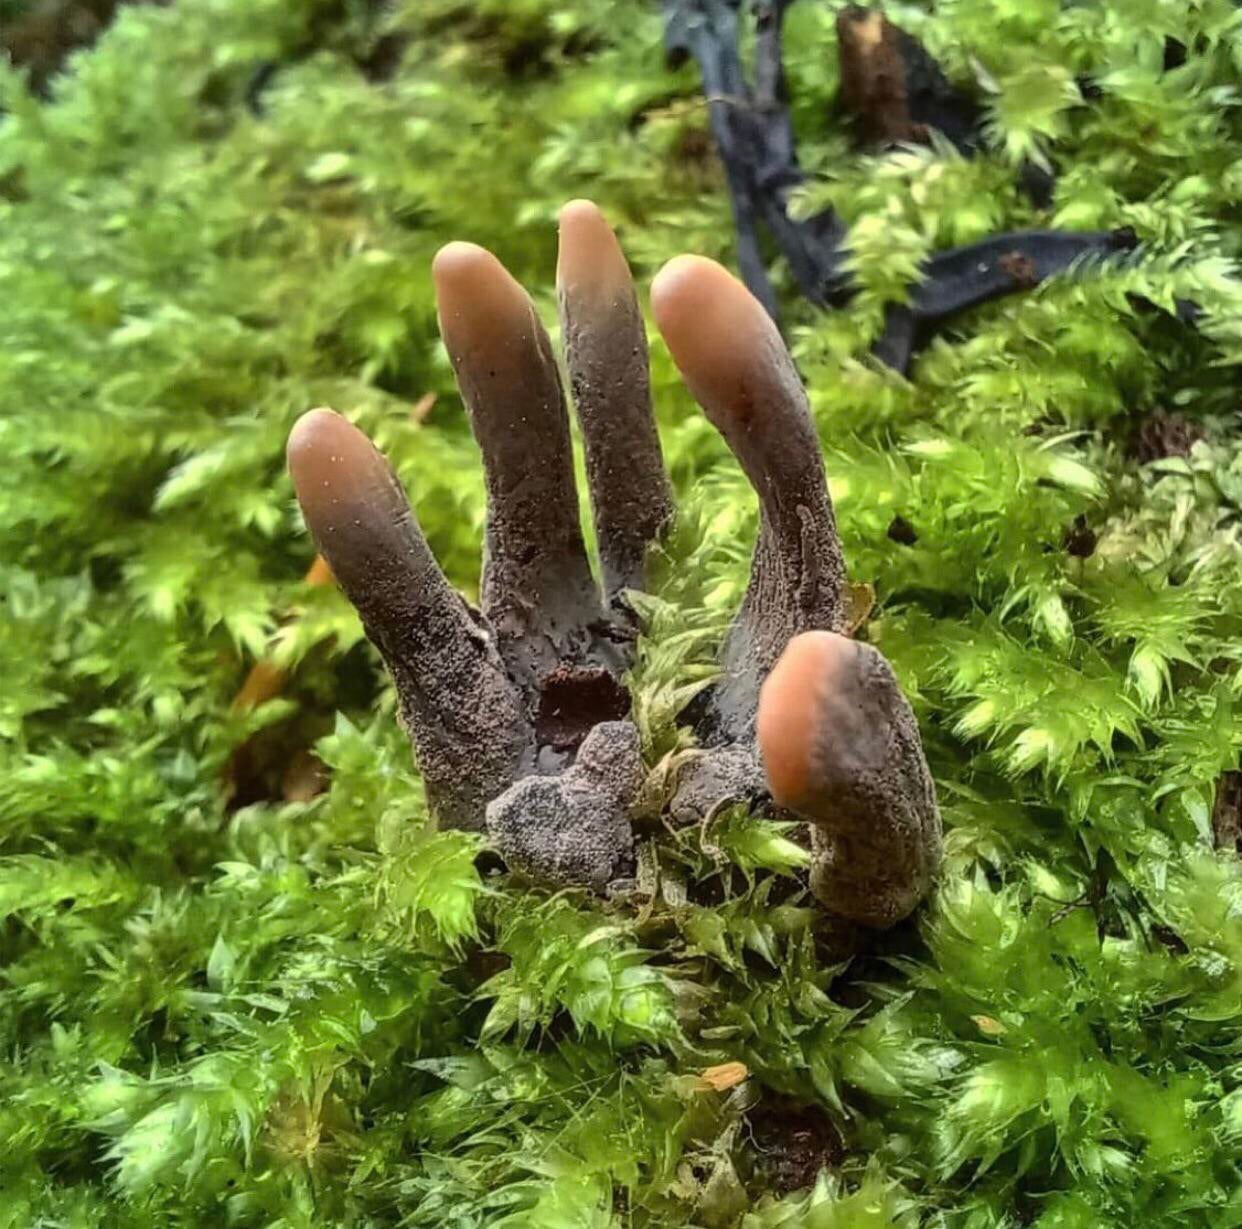 Xylaria polymorpha ou la Xilaire polymorphe, est un champignon saprobionte (du gr. sapros « putride » et  biôn « vivant ») dont l'apparence évoque des doigts humains putréfiés.